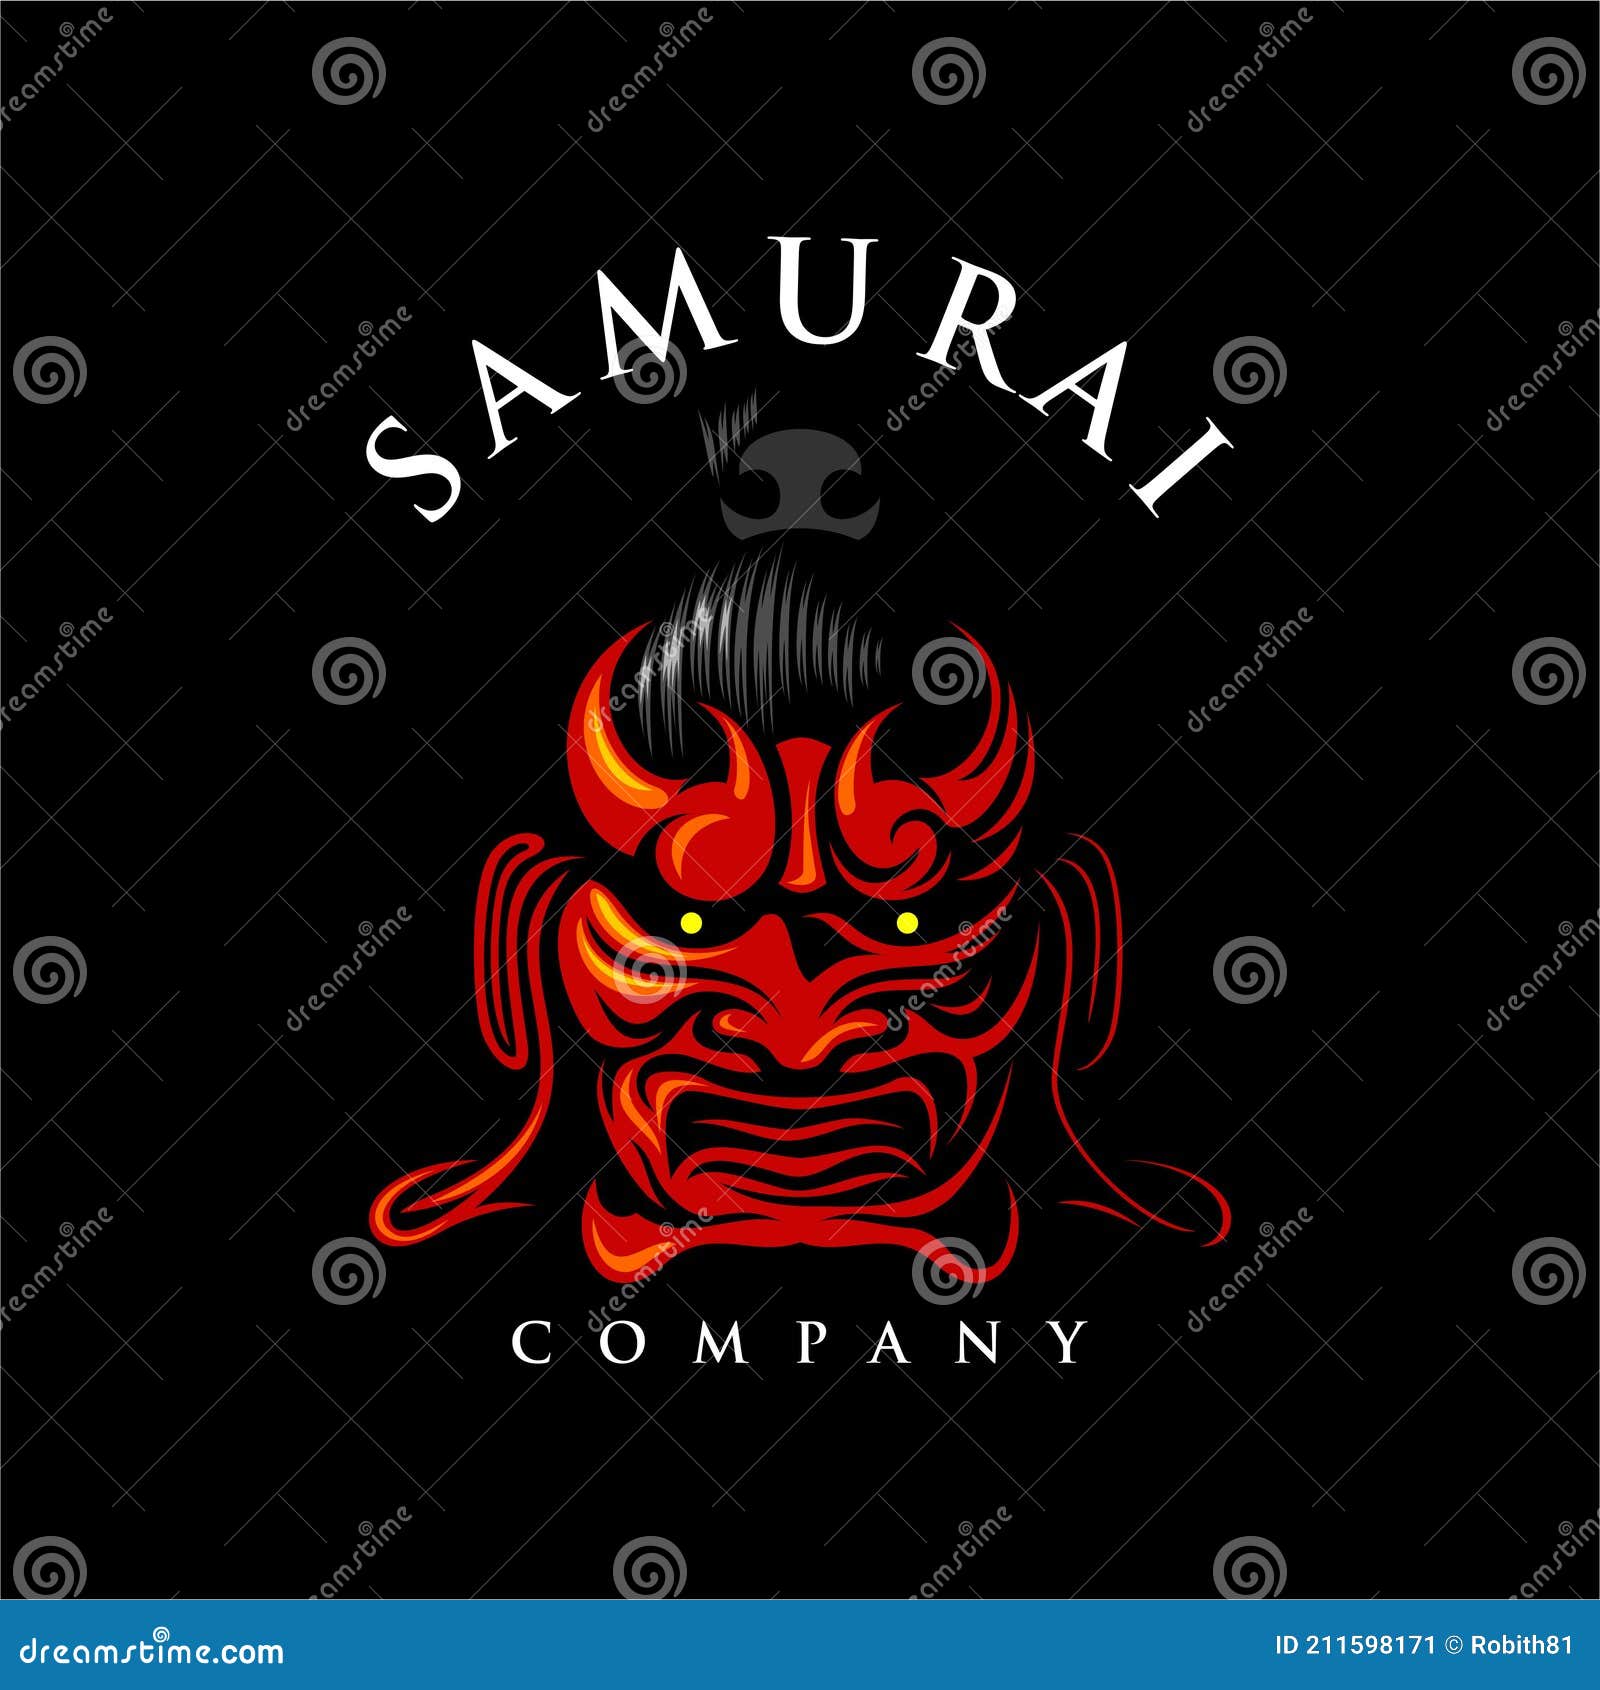 Um cartaz para o jogo samurai.